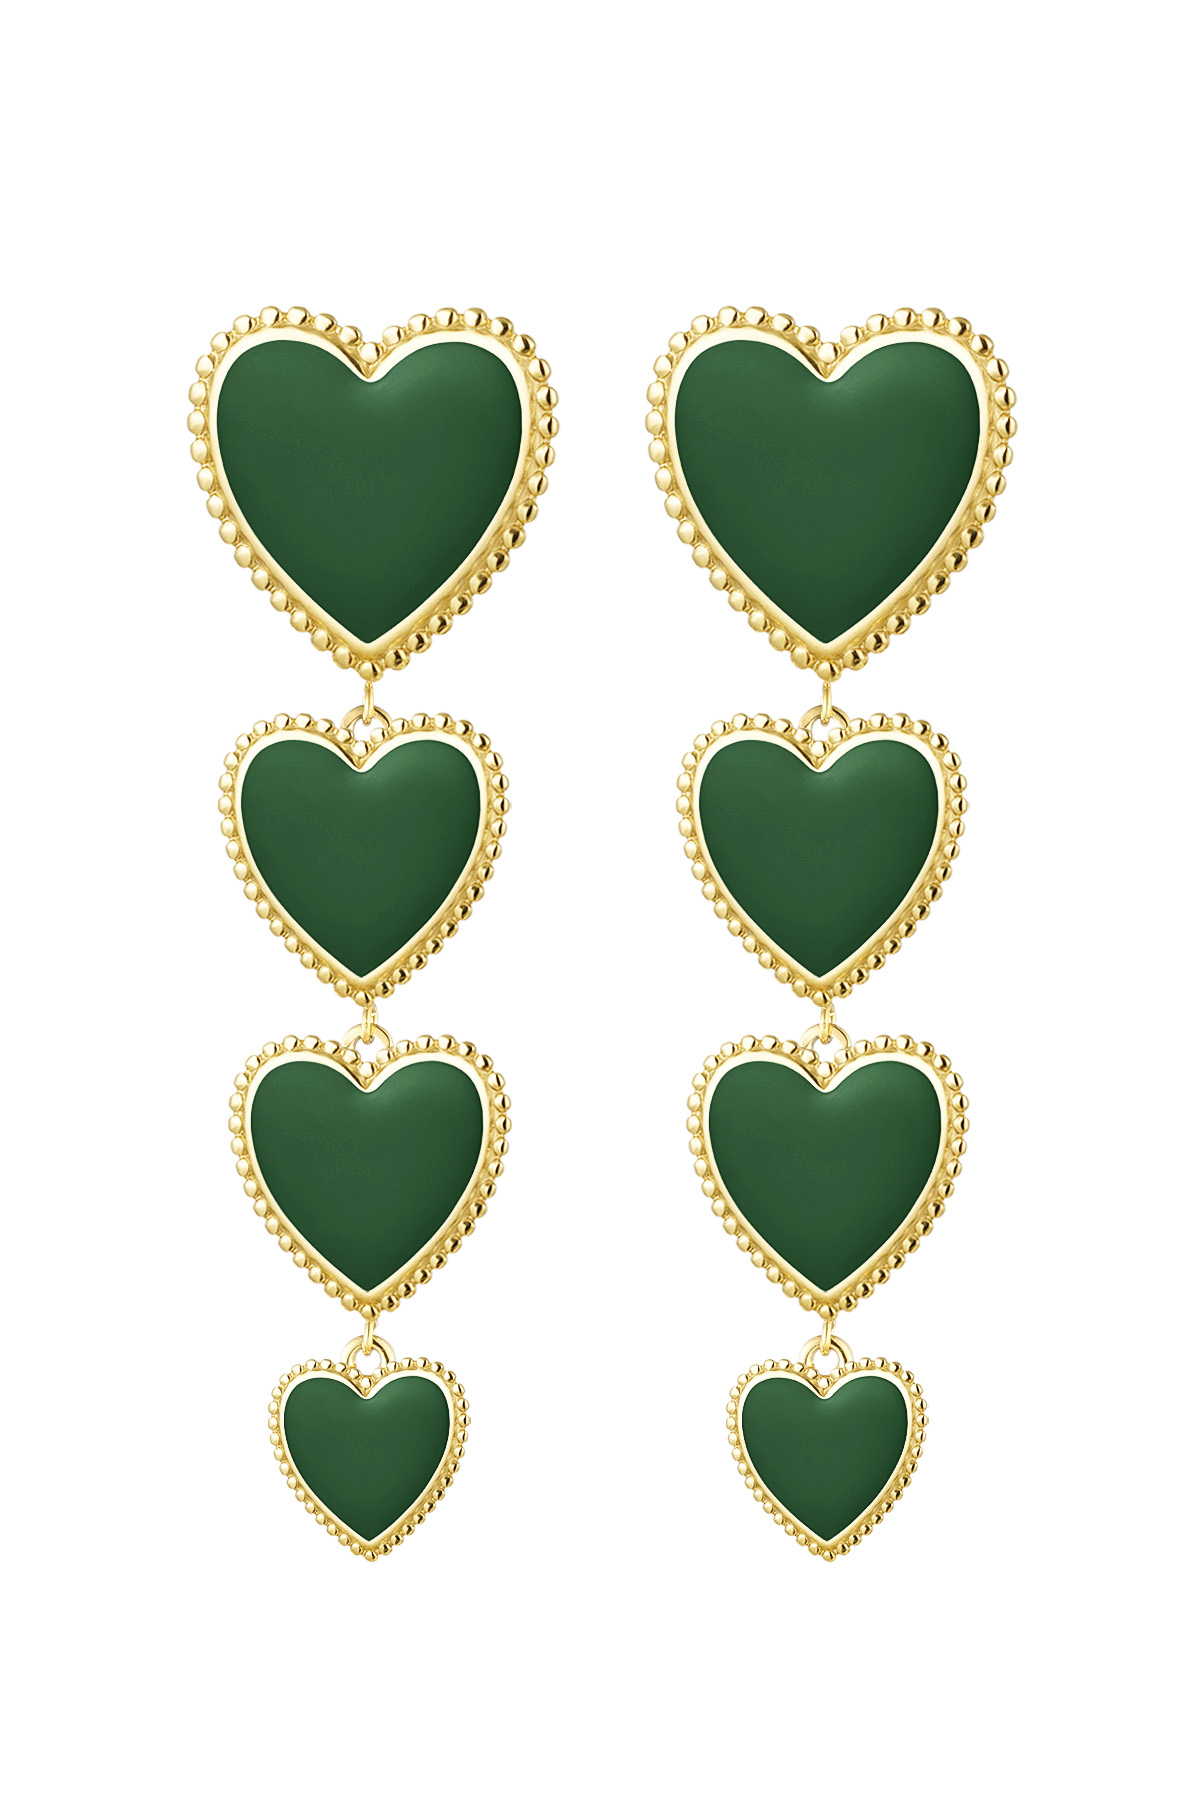 Earrings 4 hearts in a row - green